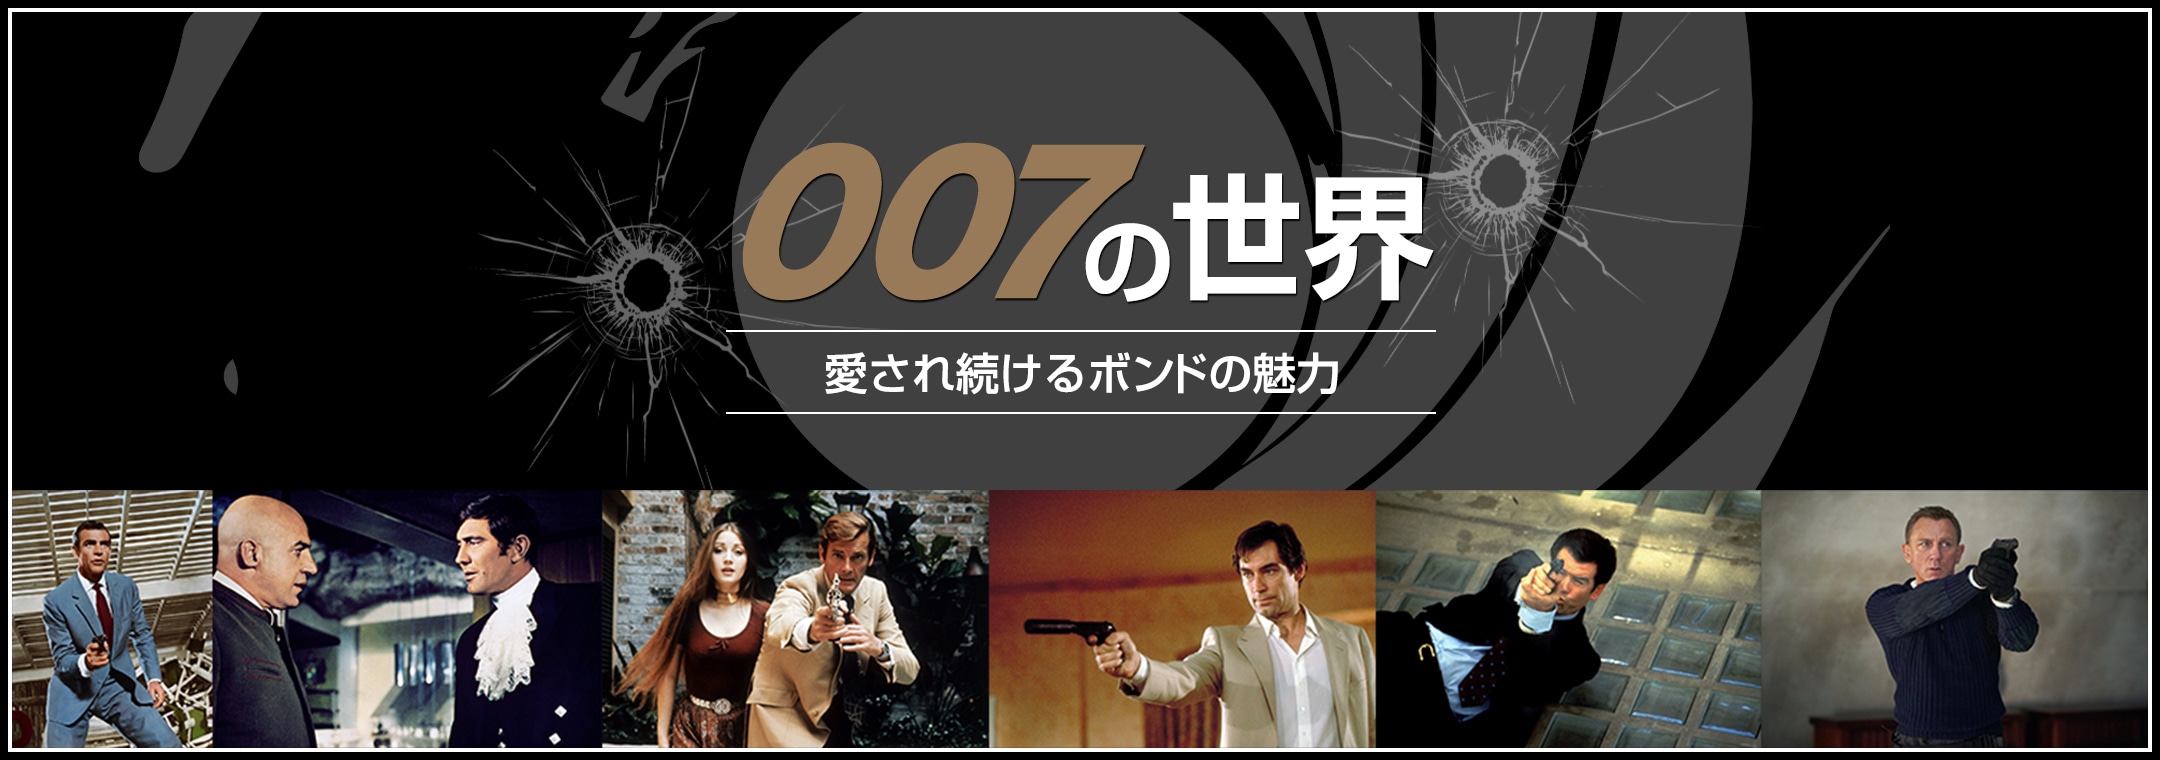 007の世界　愛され続けるボンドの魅力